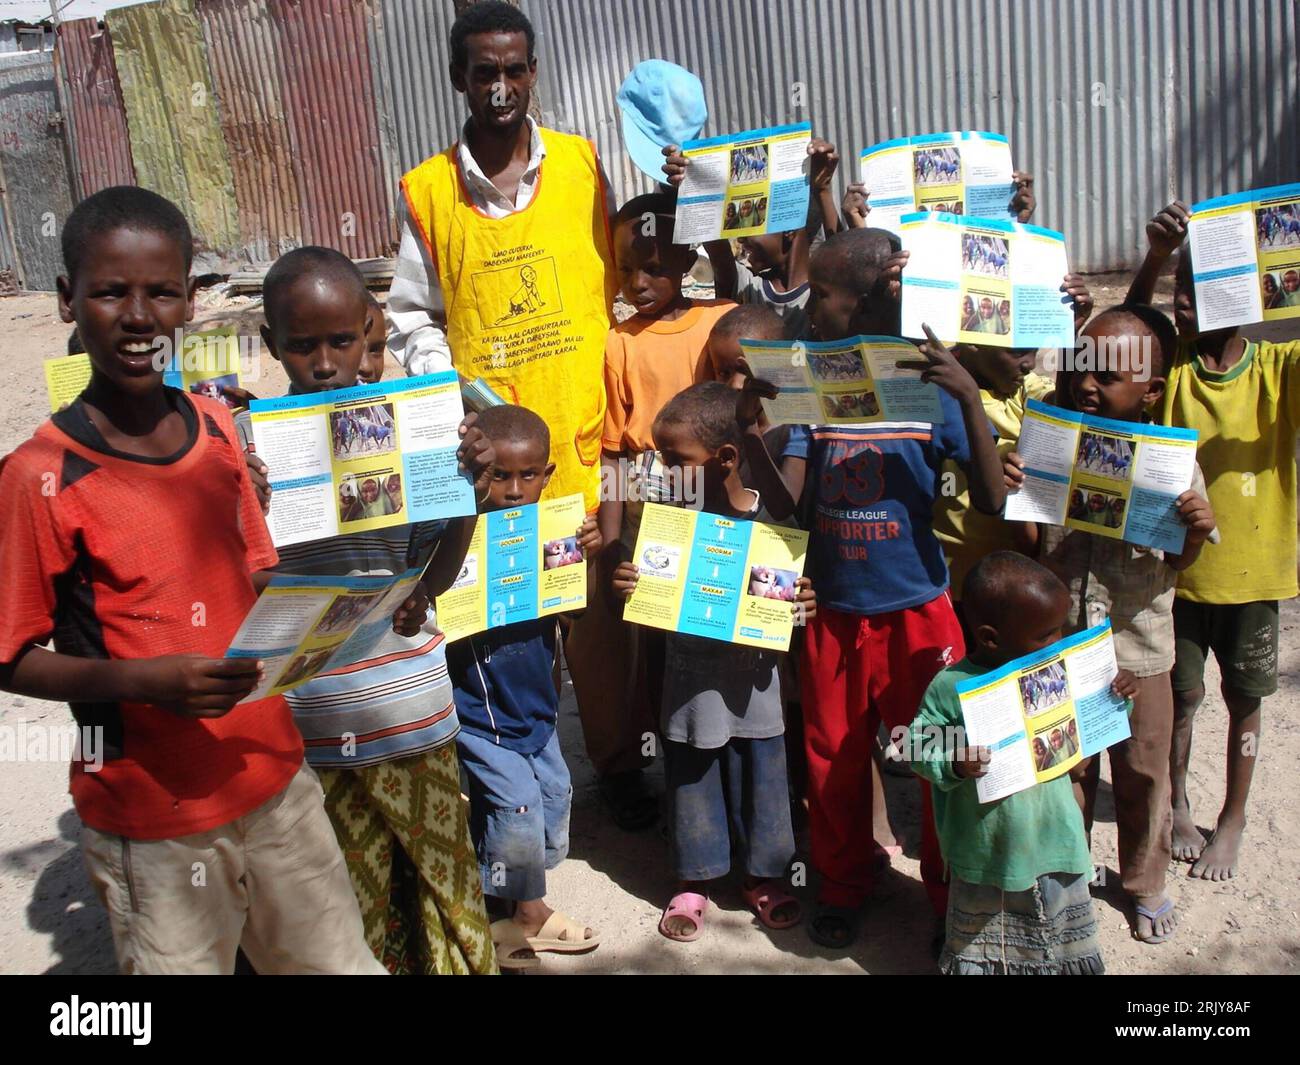 Bildnummer: 52471275  Datum: 26.03.2008  Copyright: imago/Xinhua Kinder werben in Mogadischu mit Flyern für Polio-Vorsorge - Somalia PUBLICATIONxNOTxINxCHN, Personen , premiumd; 2008, Mogadishu, Somalia, Kind, Kinder, Aktion, Vorsorge, Kinderlähmung, Vorbeugung, Impfung, Handzettel, Aufklärung, Junge, Jungen, Kleinkind, Kleinkinder, Prävention; , quer, Kbdig, Gruppenbild,  , Gesundheit, Afrika o0 Gesellschaft Stock Photo